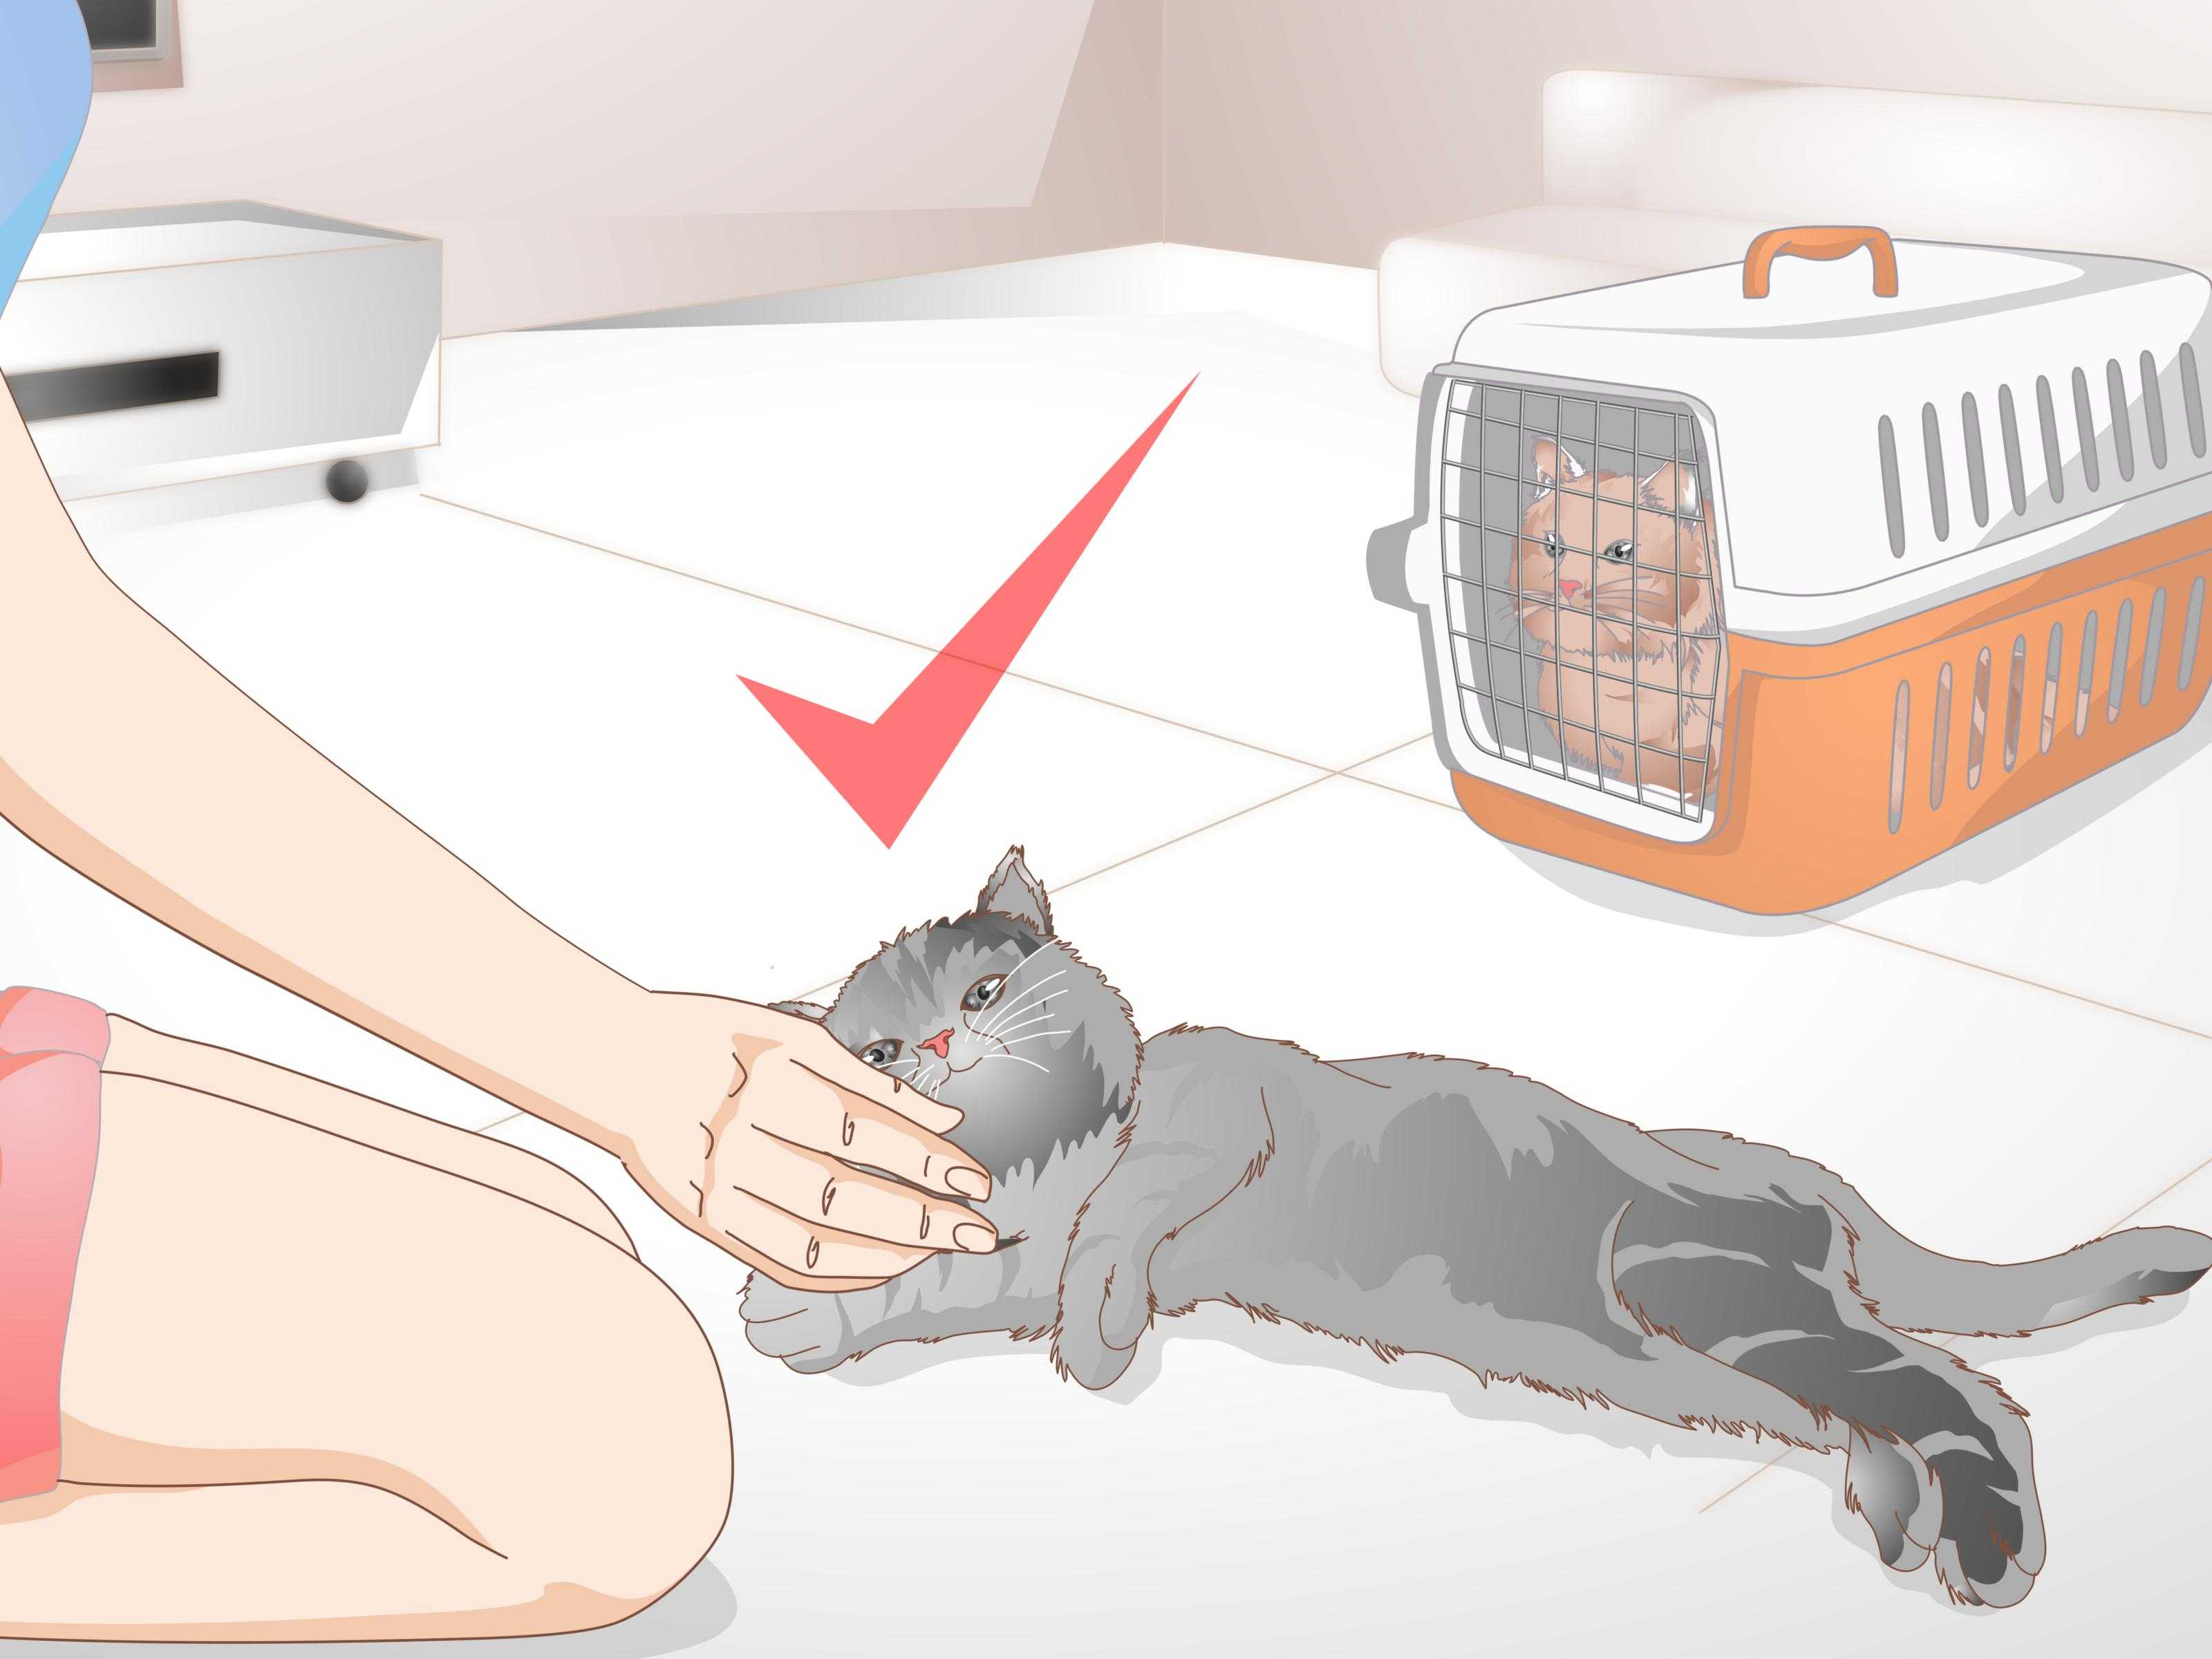 5 самых распространенных причин запаха из пасти у кошки